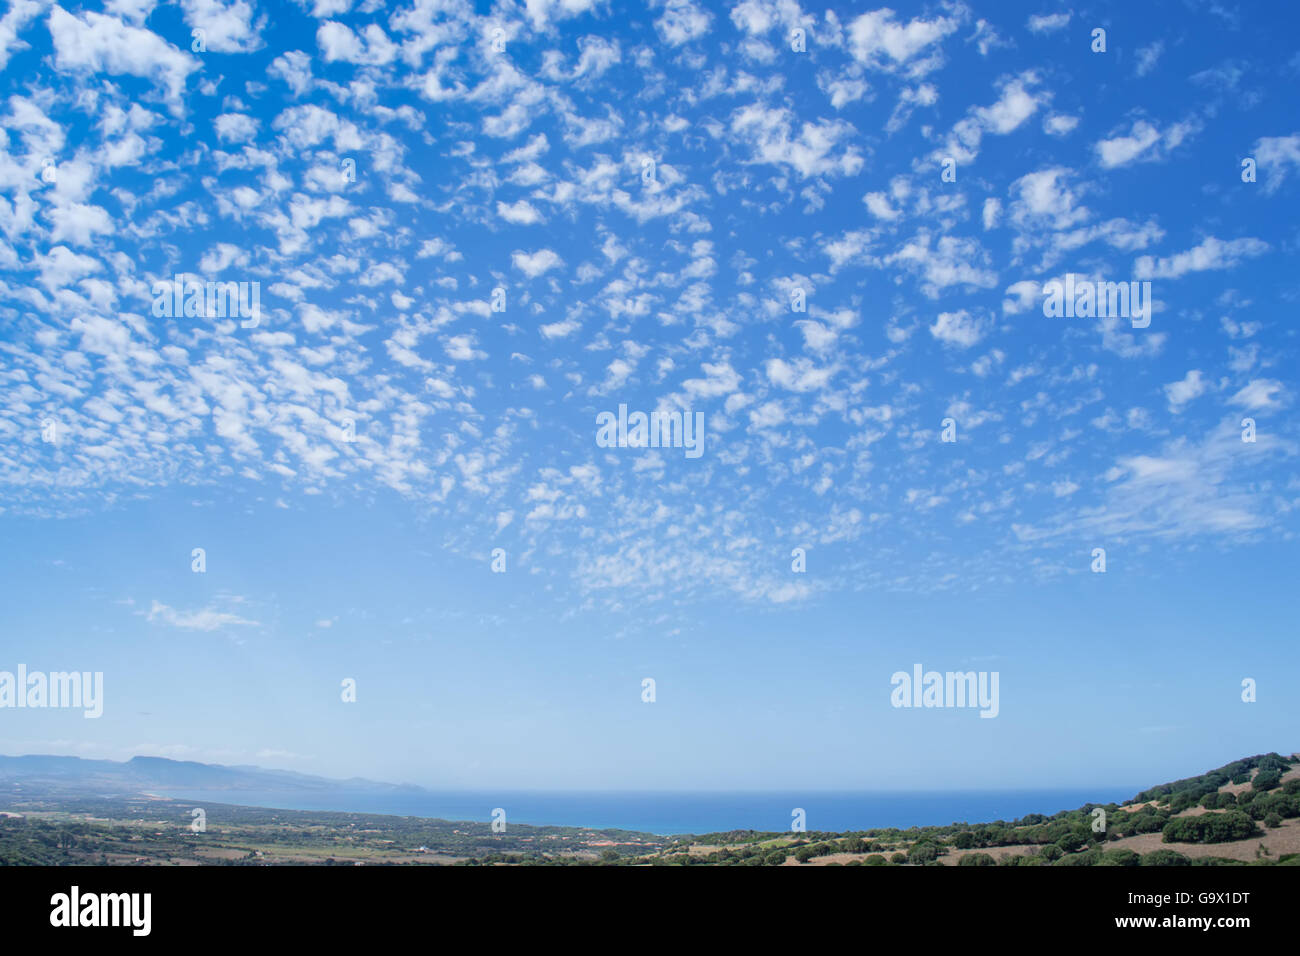 Golfo dell'Asinara sotto un cielo nuvoloso. Foto Stock